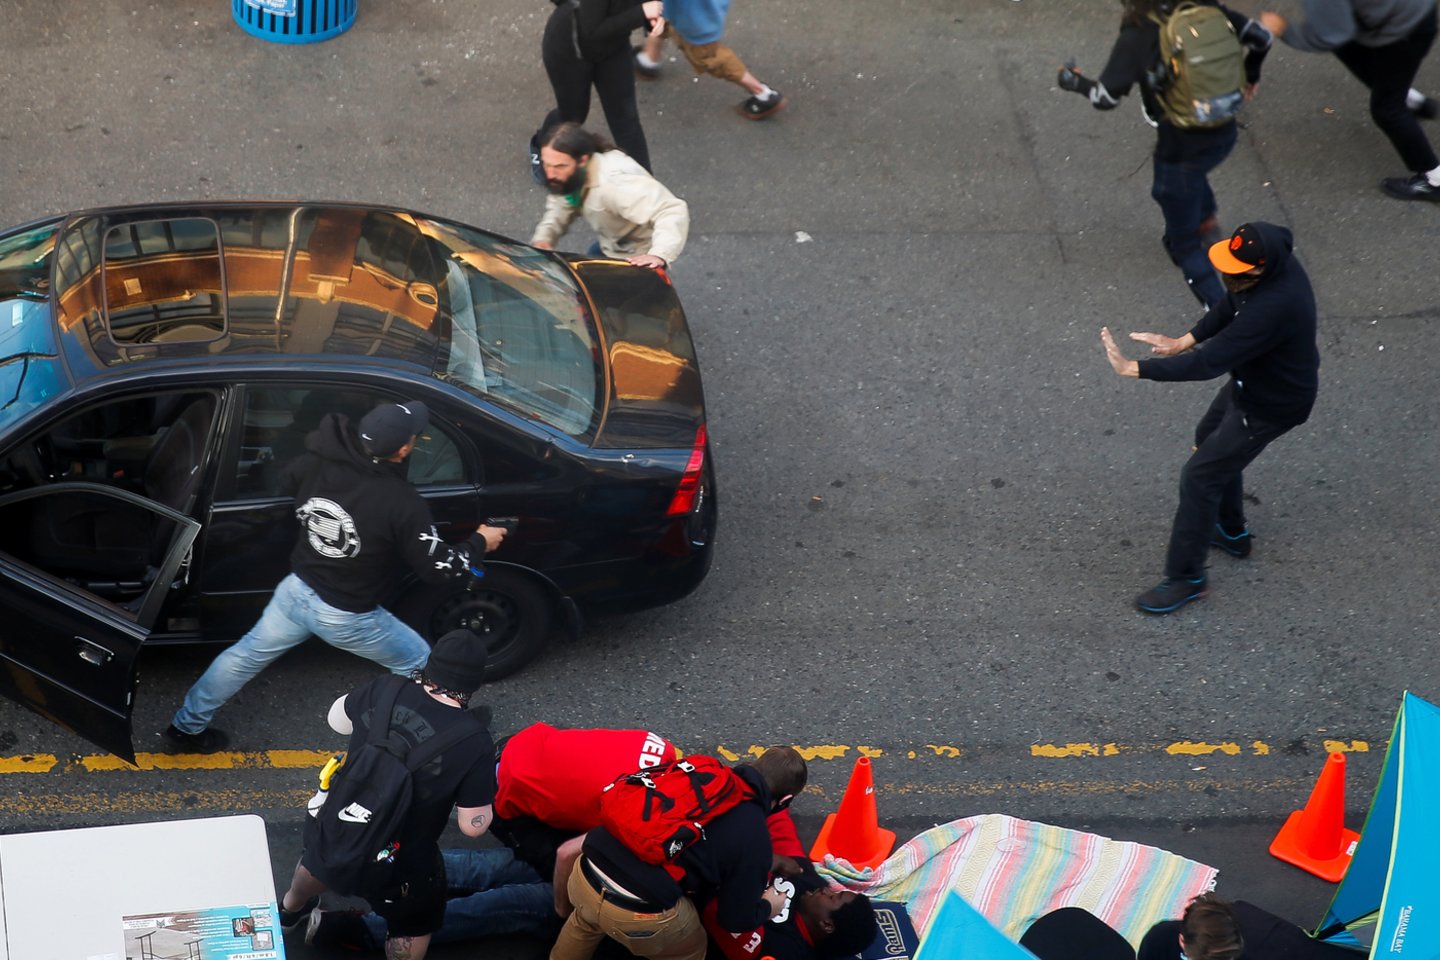  Siatle vyras nukreipė automobilį į protestuotojus ir į juos šaudė.  <br> Reuters/Scanpix nuotr.